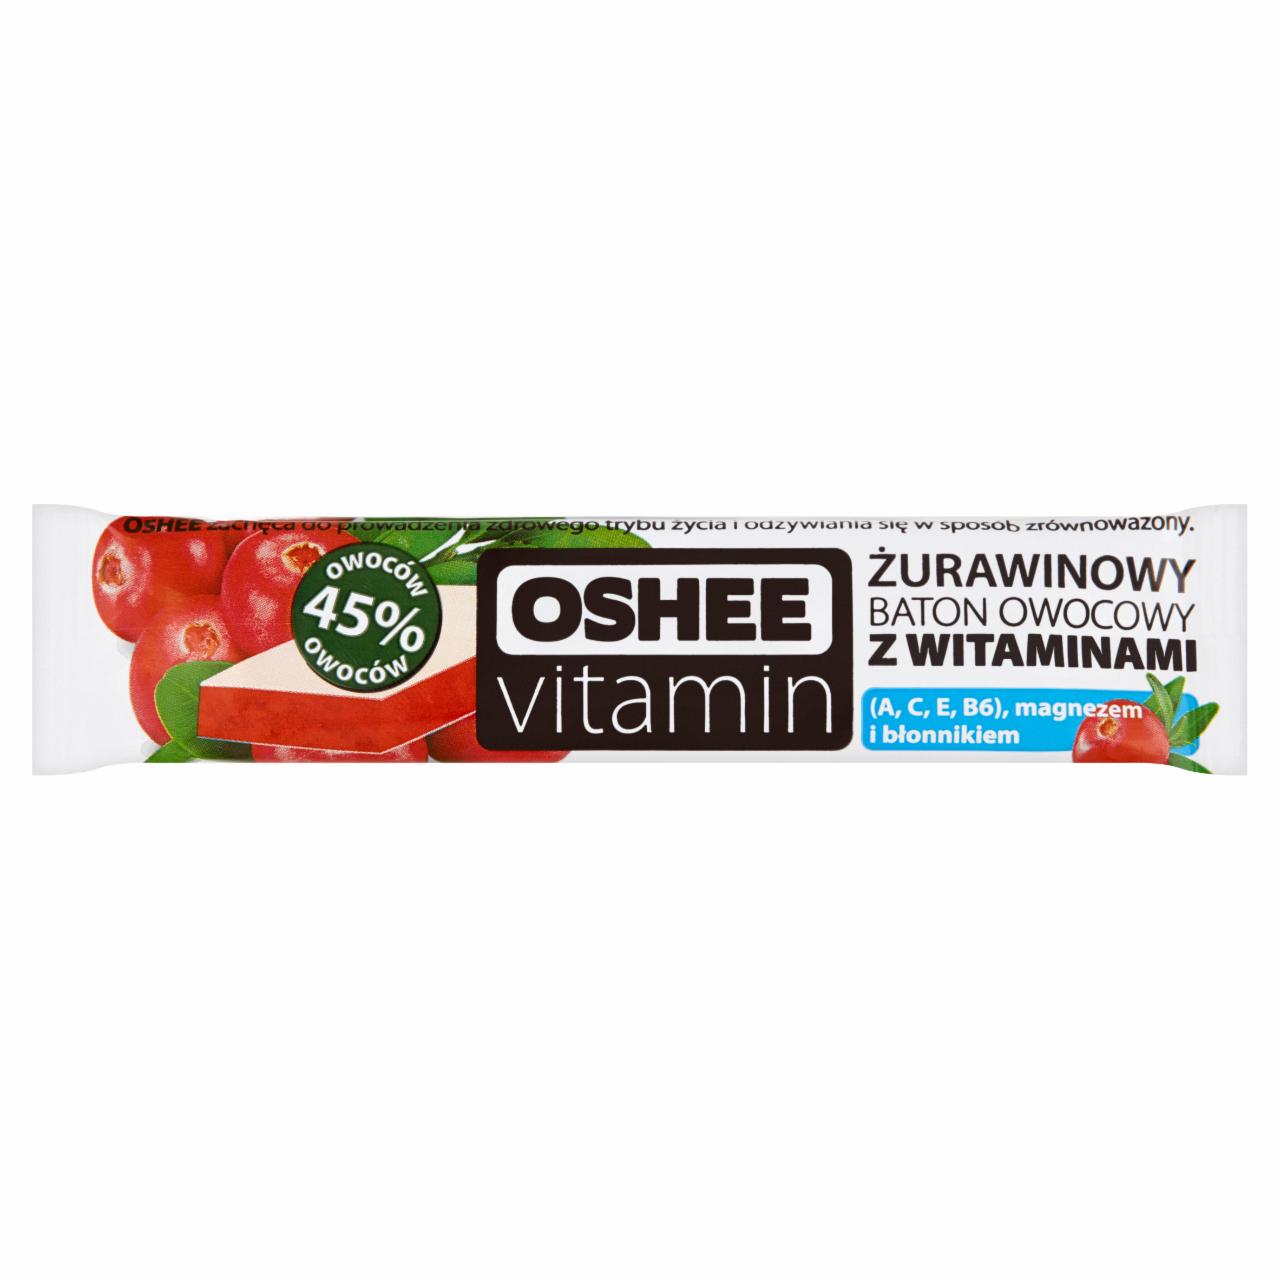 Zdjęcia - Oshee Vitamin Żurawinowy baton owocowy z witaminami 23 g